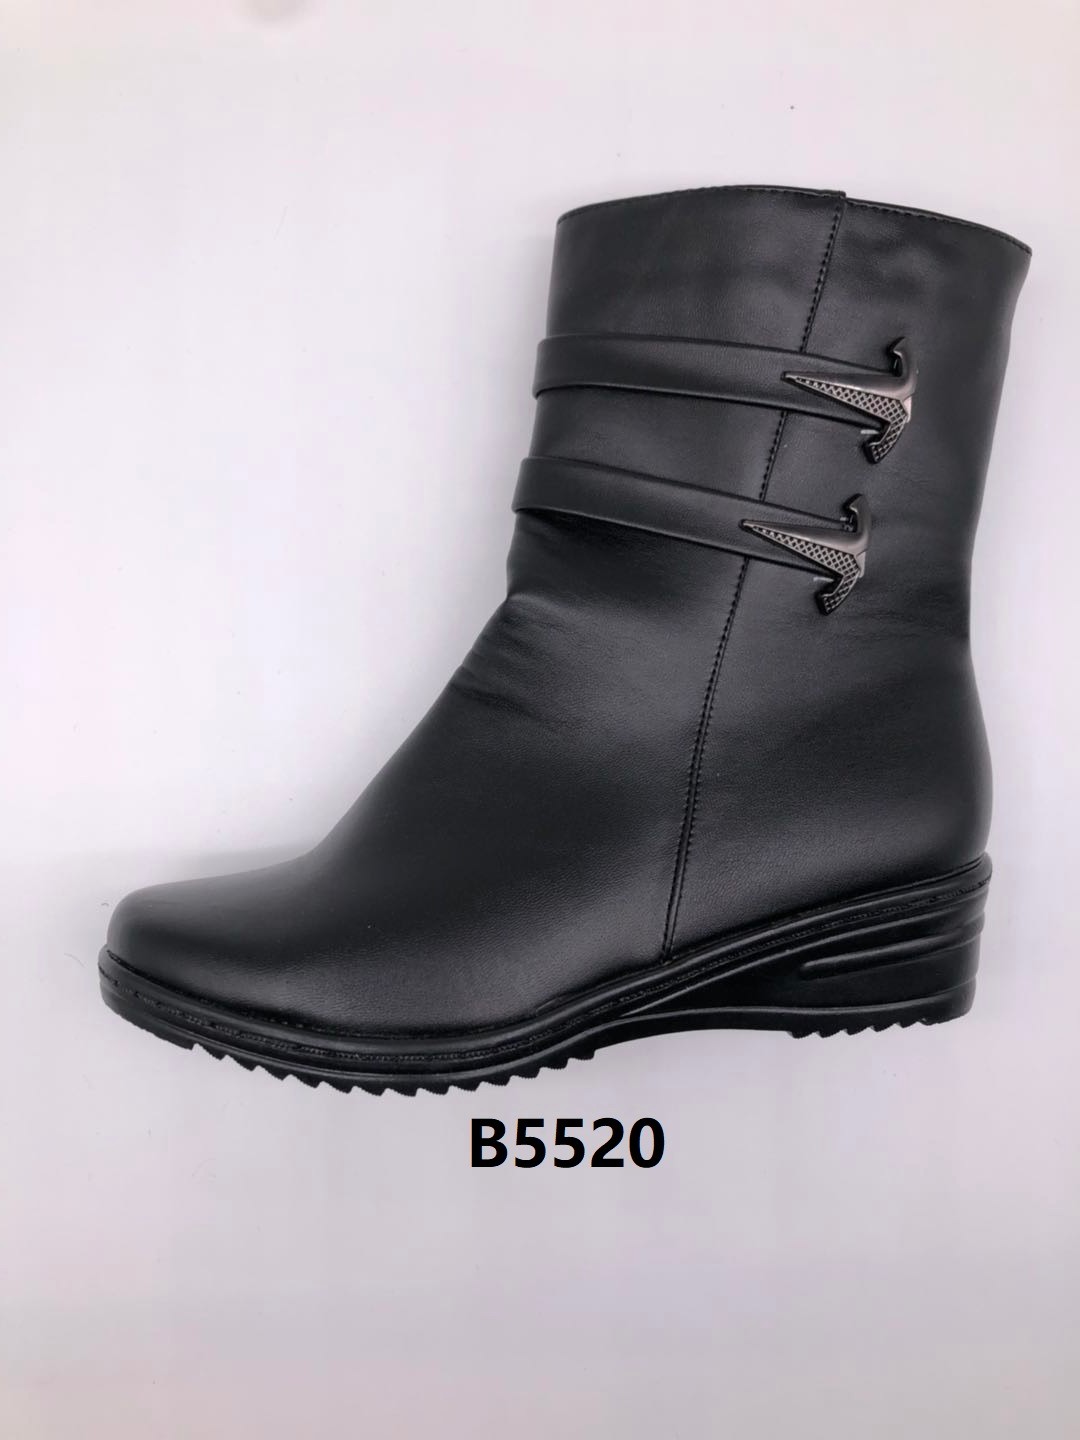 冬季2020新款女士棉鞋保暖舒适合脚休闲细腻轻便欧码B5520详情图2